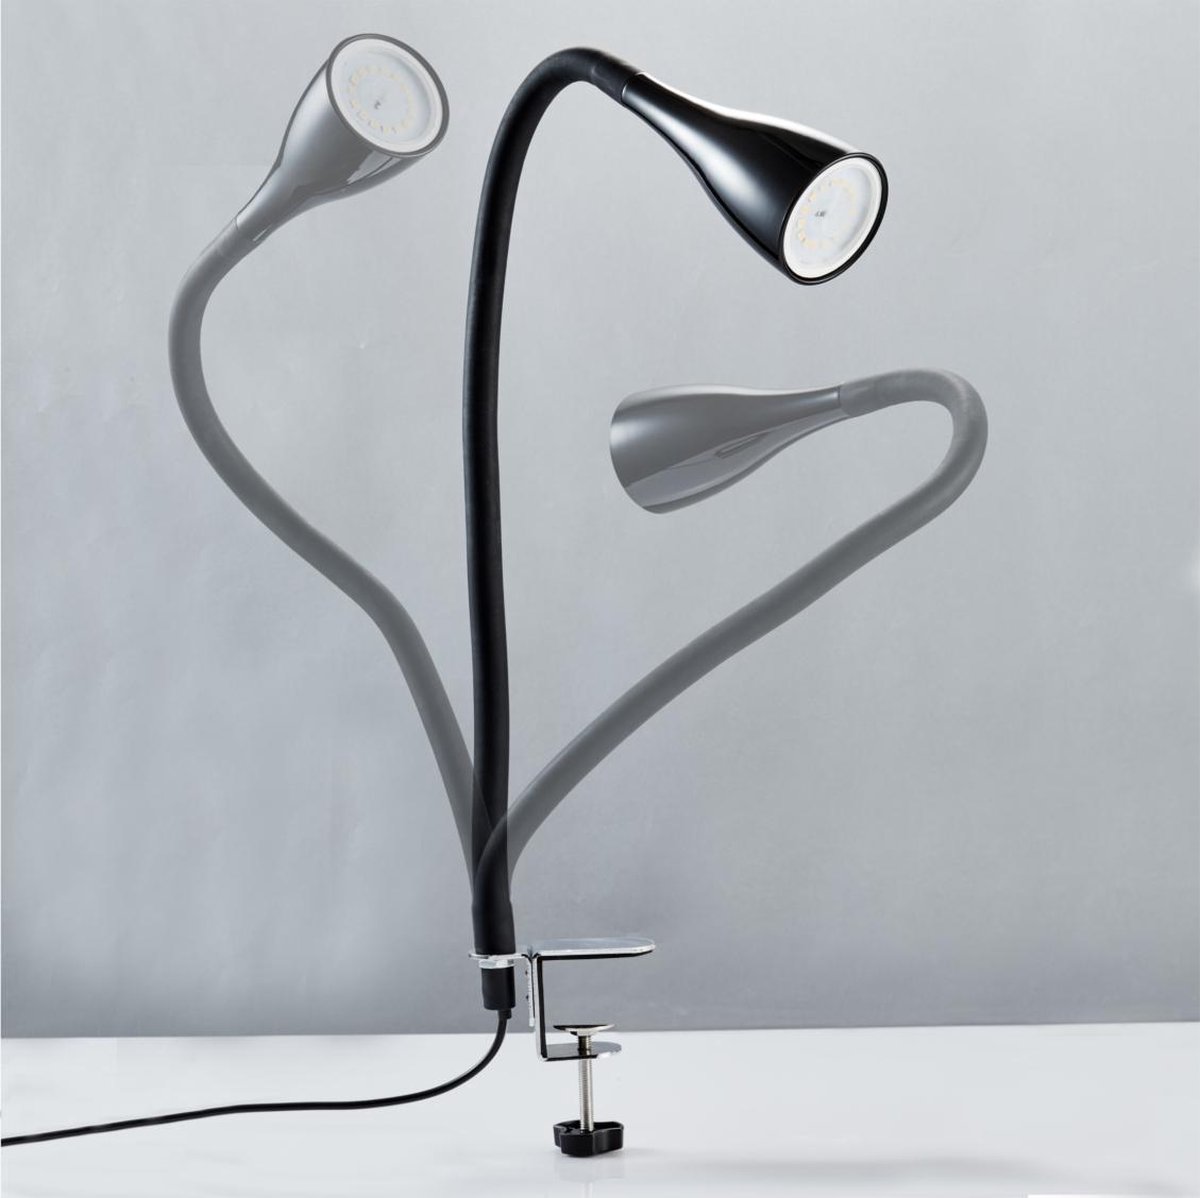 Lampe de lecture LED bras flexible GU10 lampe à pince pour bureau chevet  noir